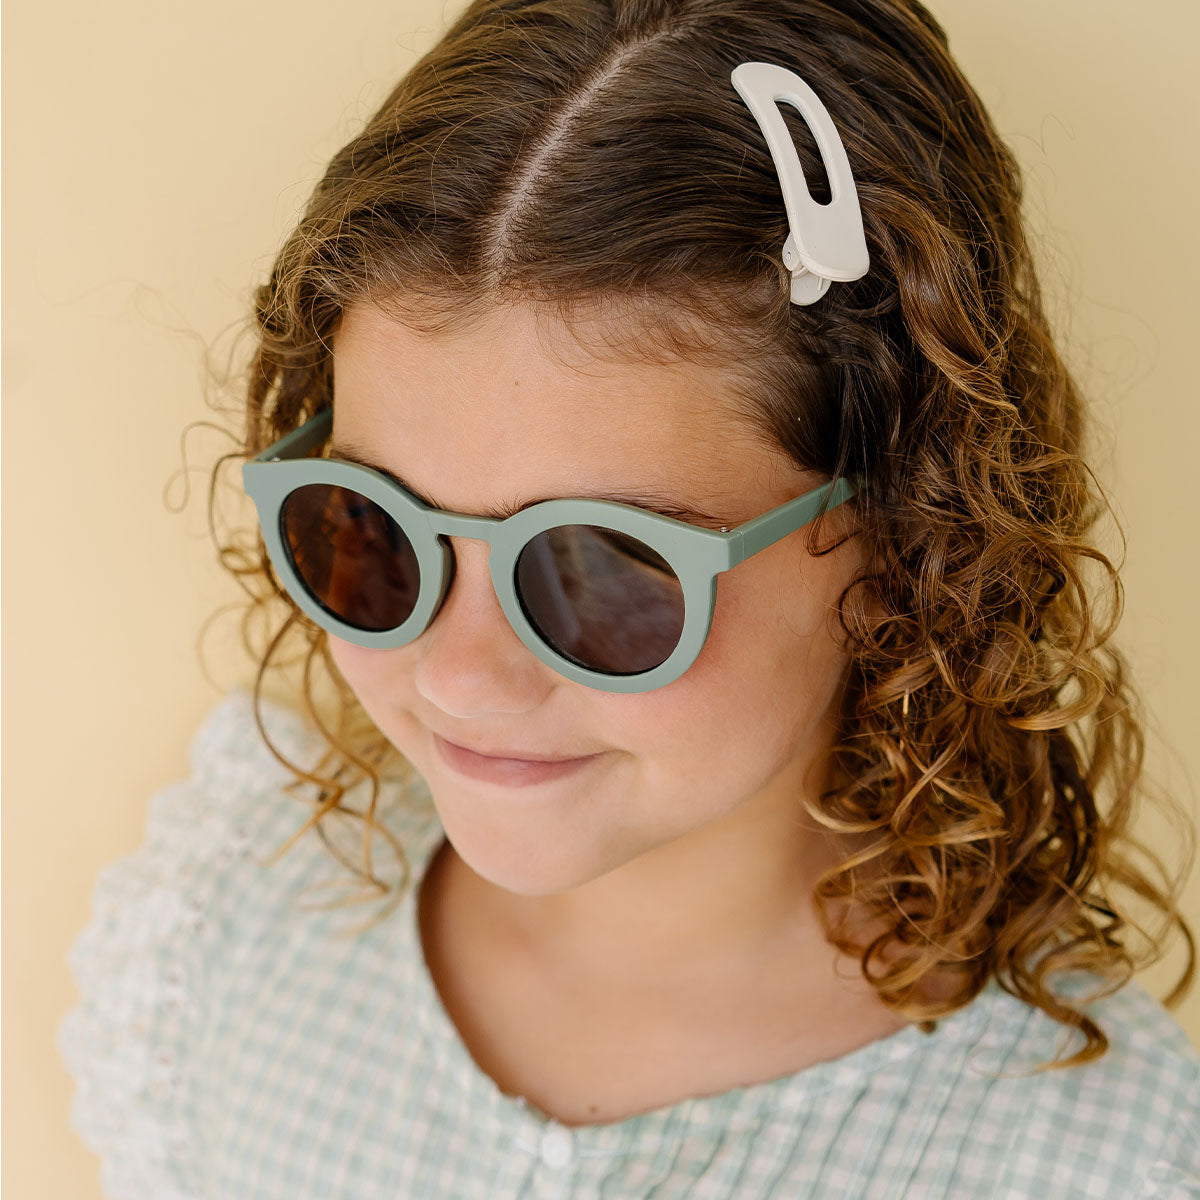 De Grech & co. zonnebril classic kind in de kleur fern is de perfecte keuze voor trendy en modebewuste kinderen en hun ouders. De zonnebril is namelijk ook beschikbaar voor volwassenen! VanZus